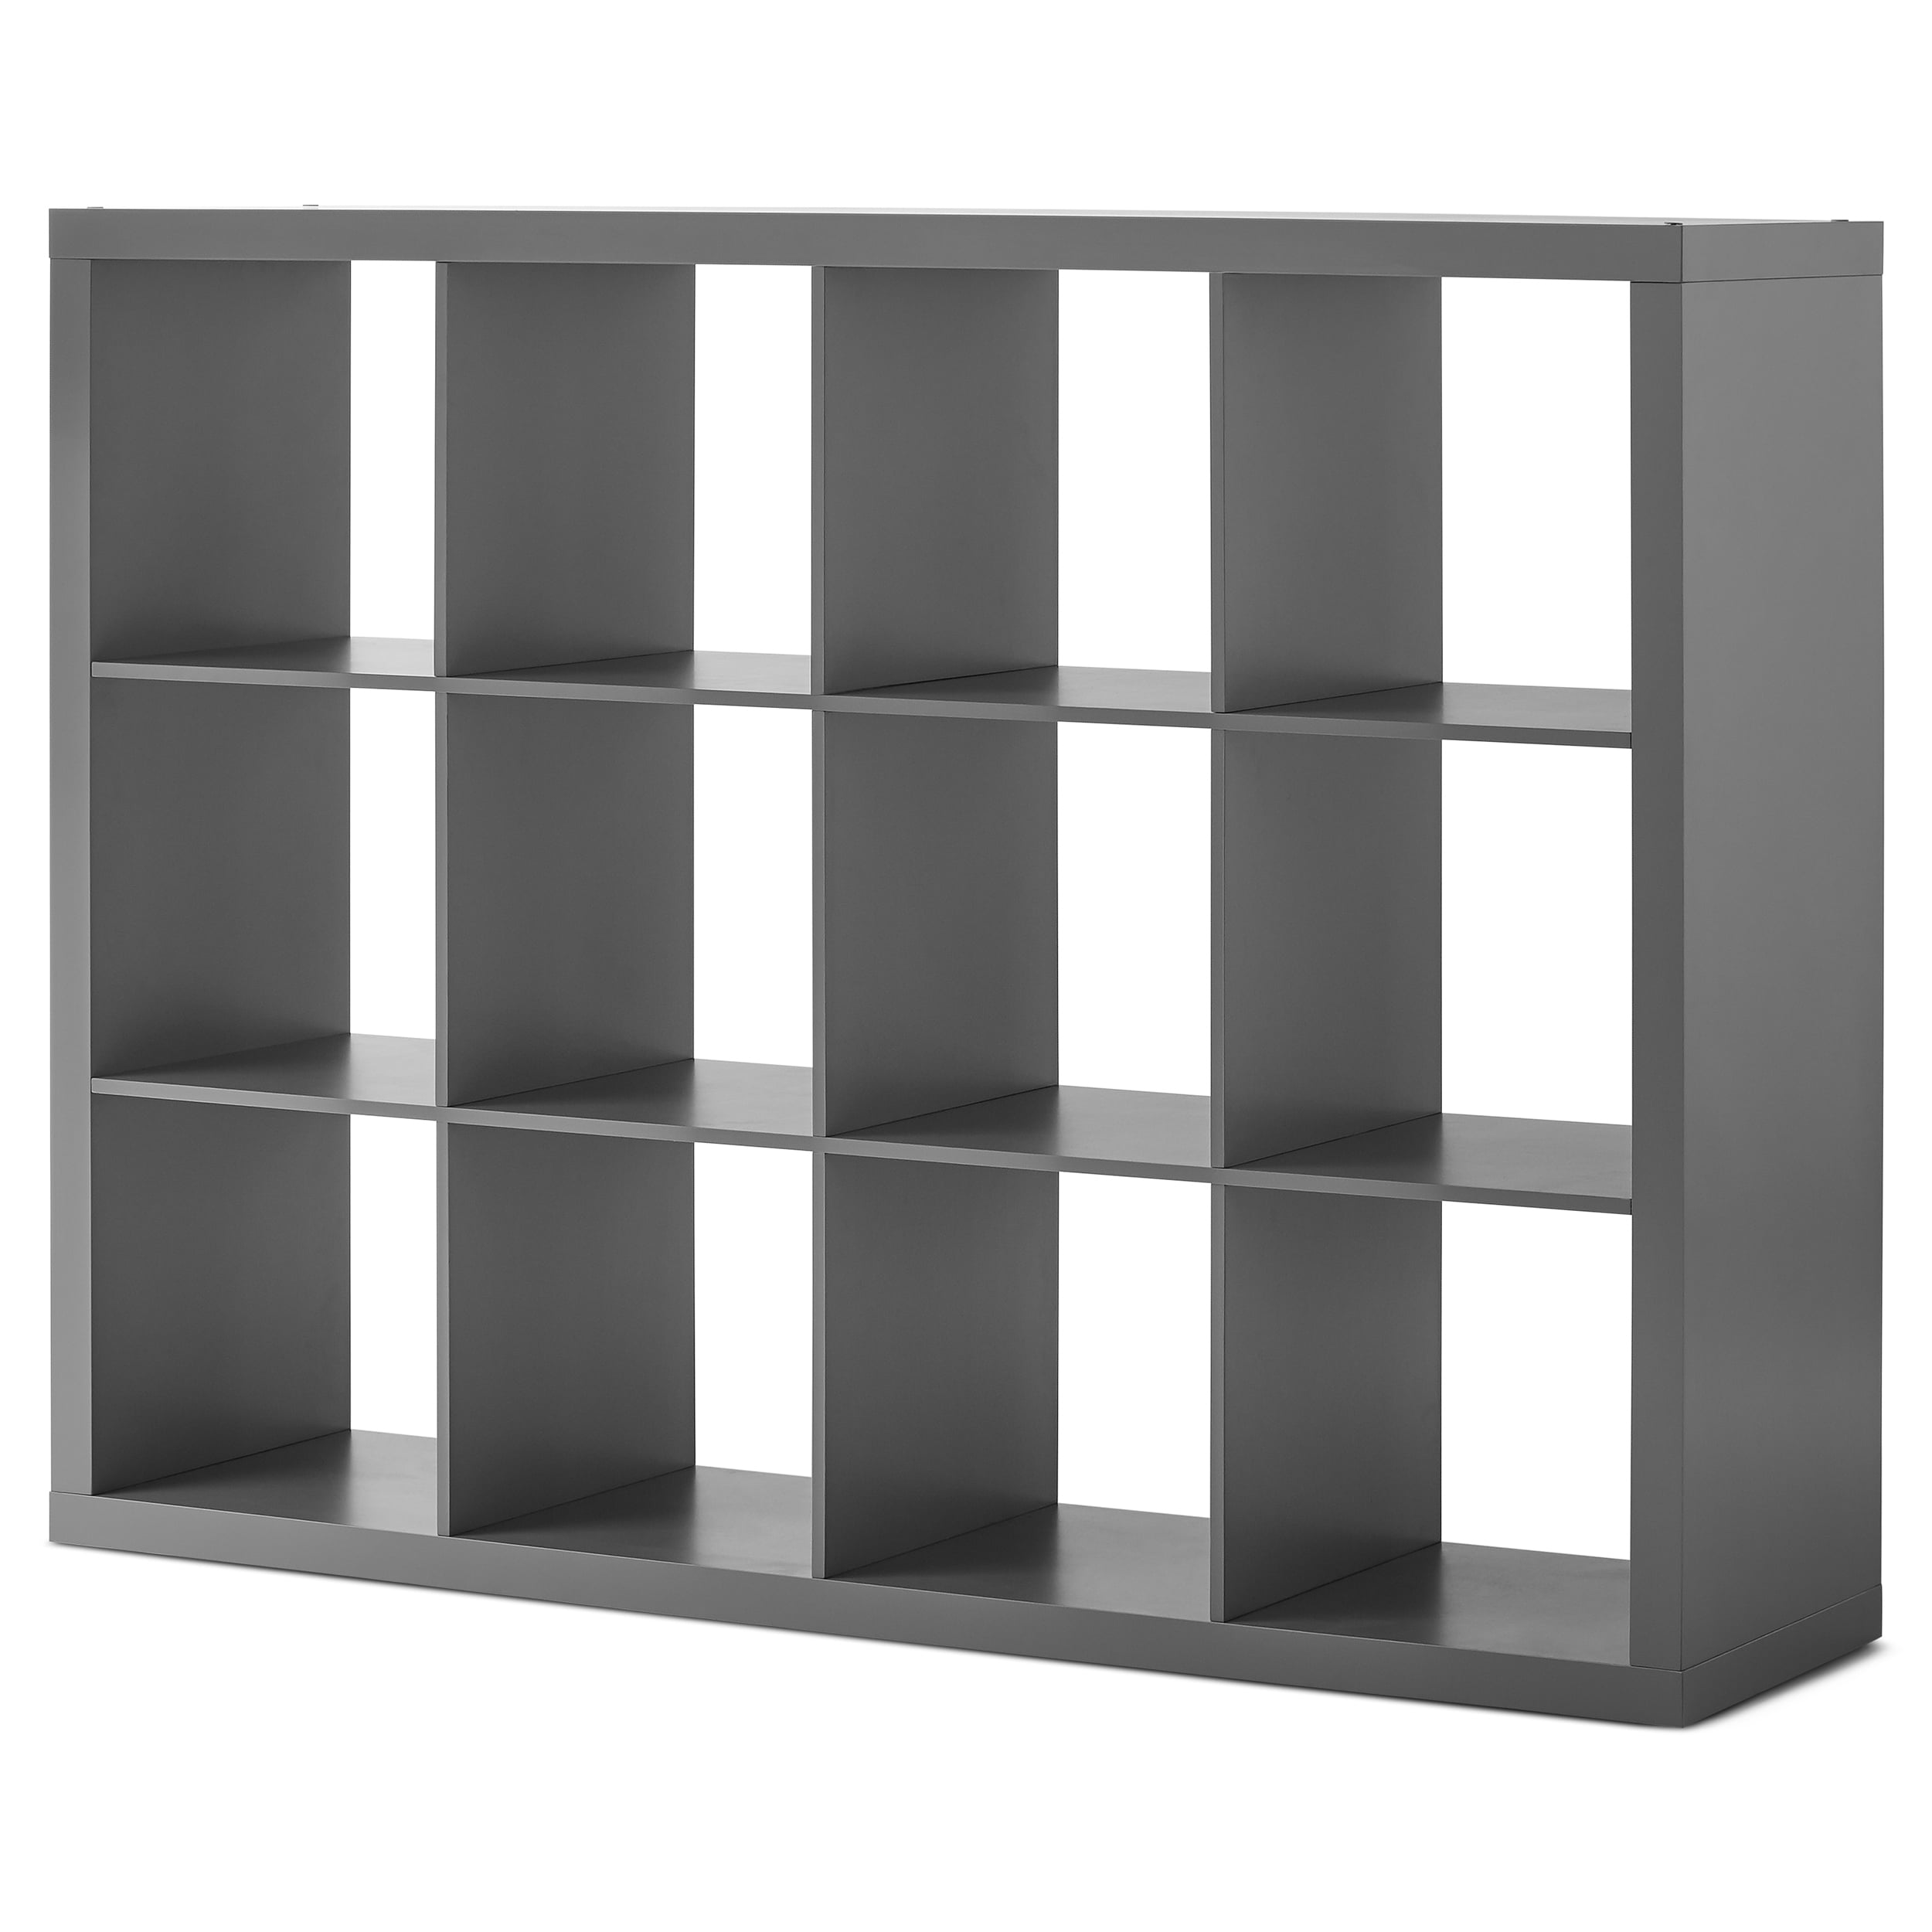 Better Homes and Gardens 2 Cube Storage Organizer Home Shelf Tier Decor Shelves 